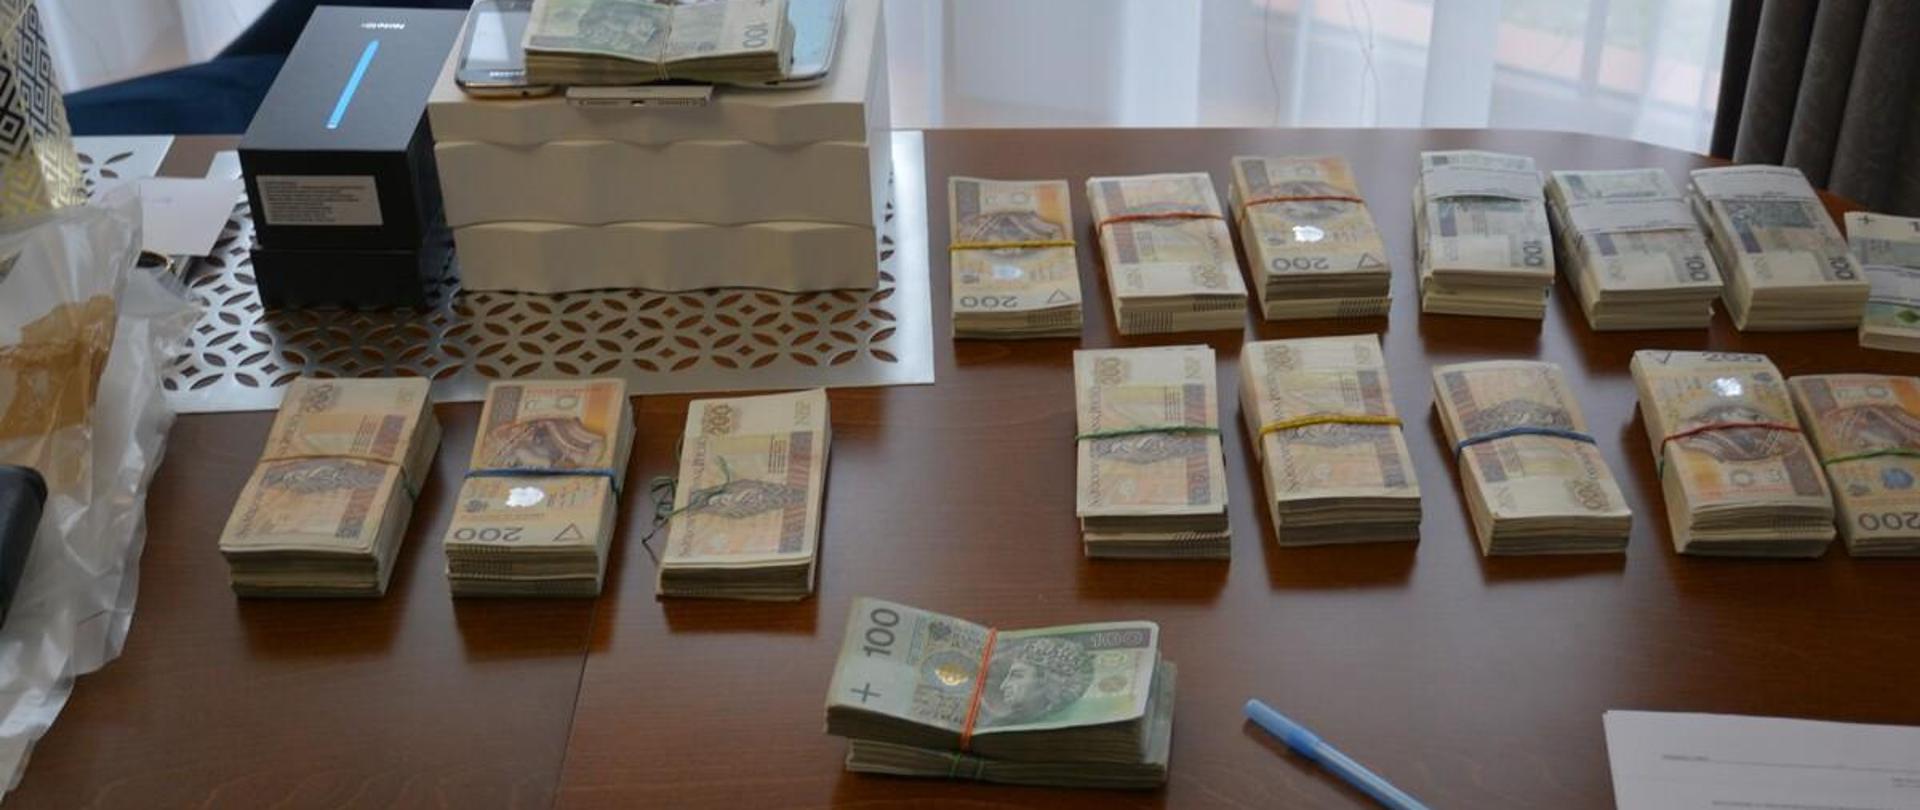 Podkarpacki pion PZ PK doprowadził do skazania 26 członków zorganizowanej grupy przestępczej zajmującej się czerpaniem korzyści majątkowych z prostytucji oraz handlem narkotykami